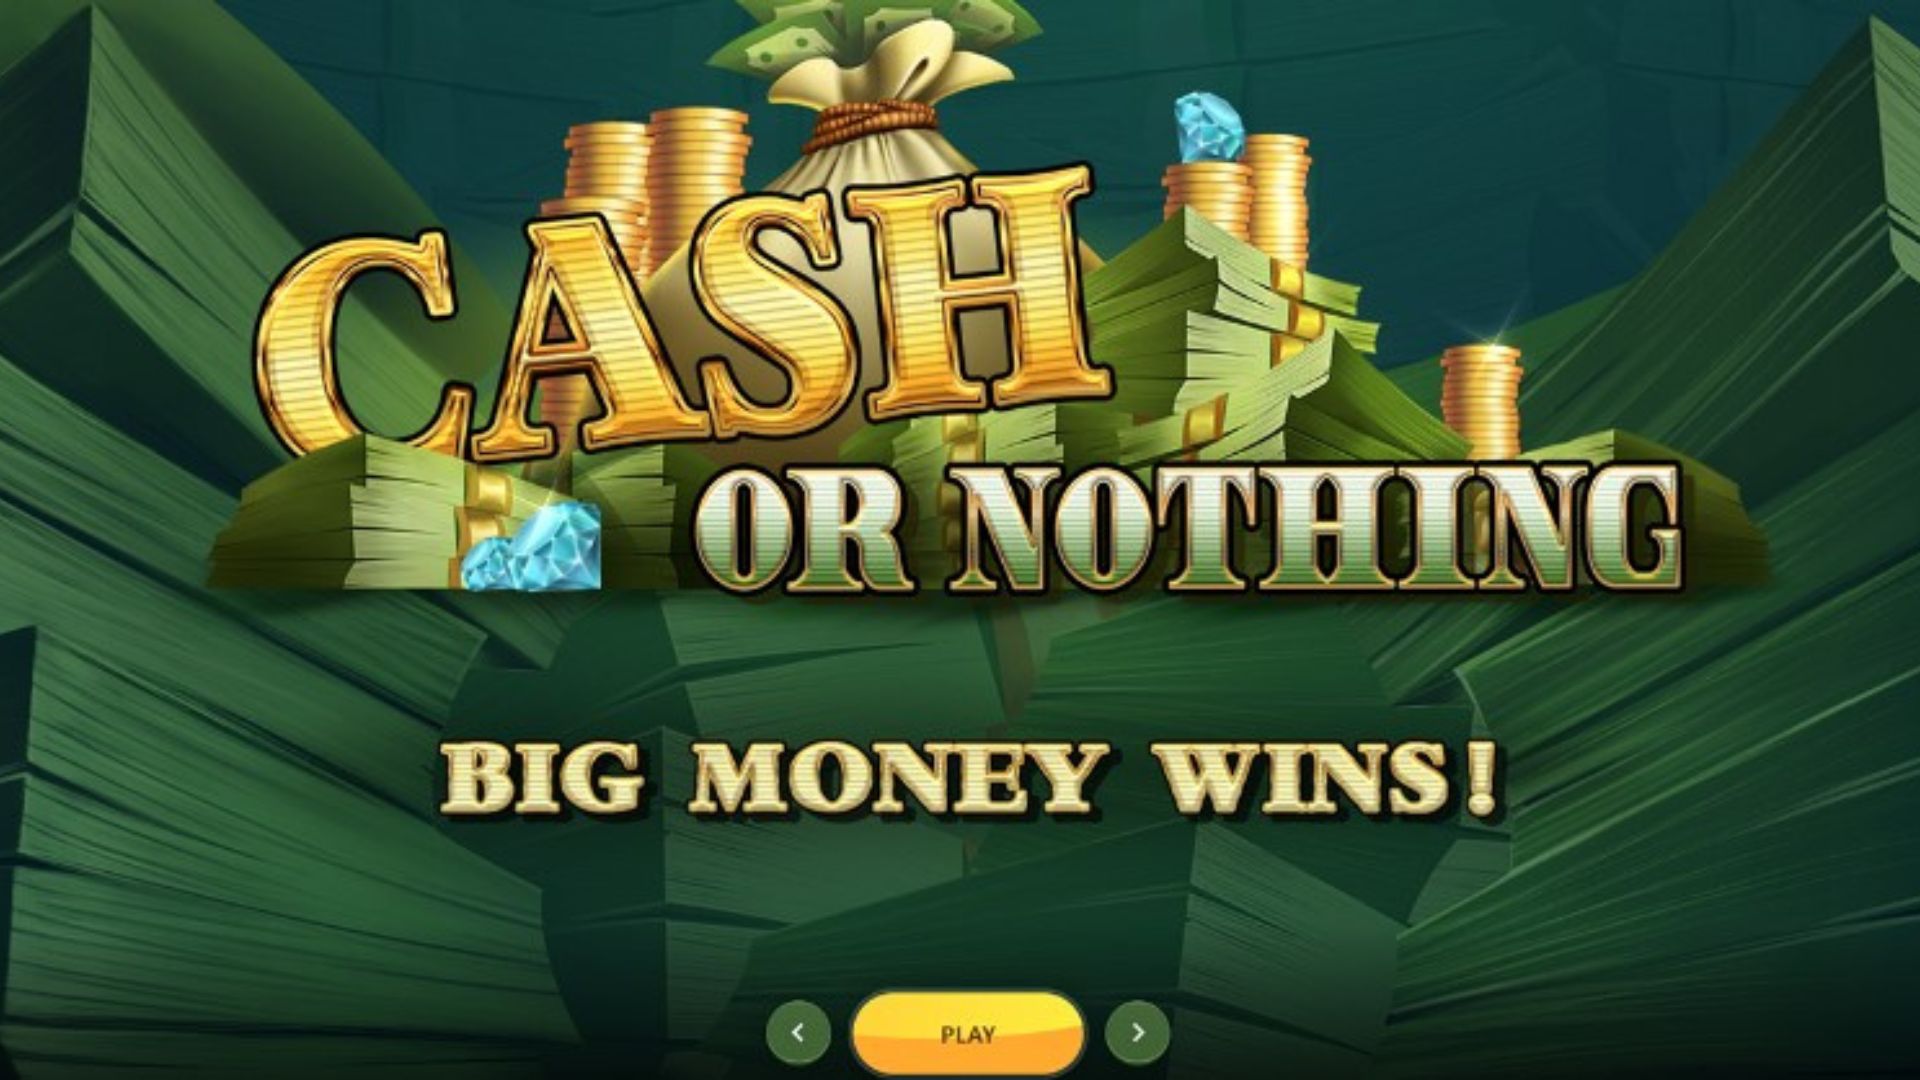 bonus cash or nothing